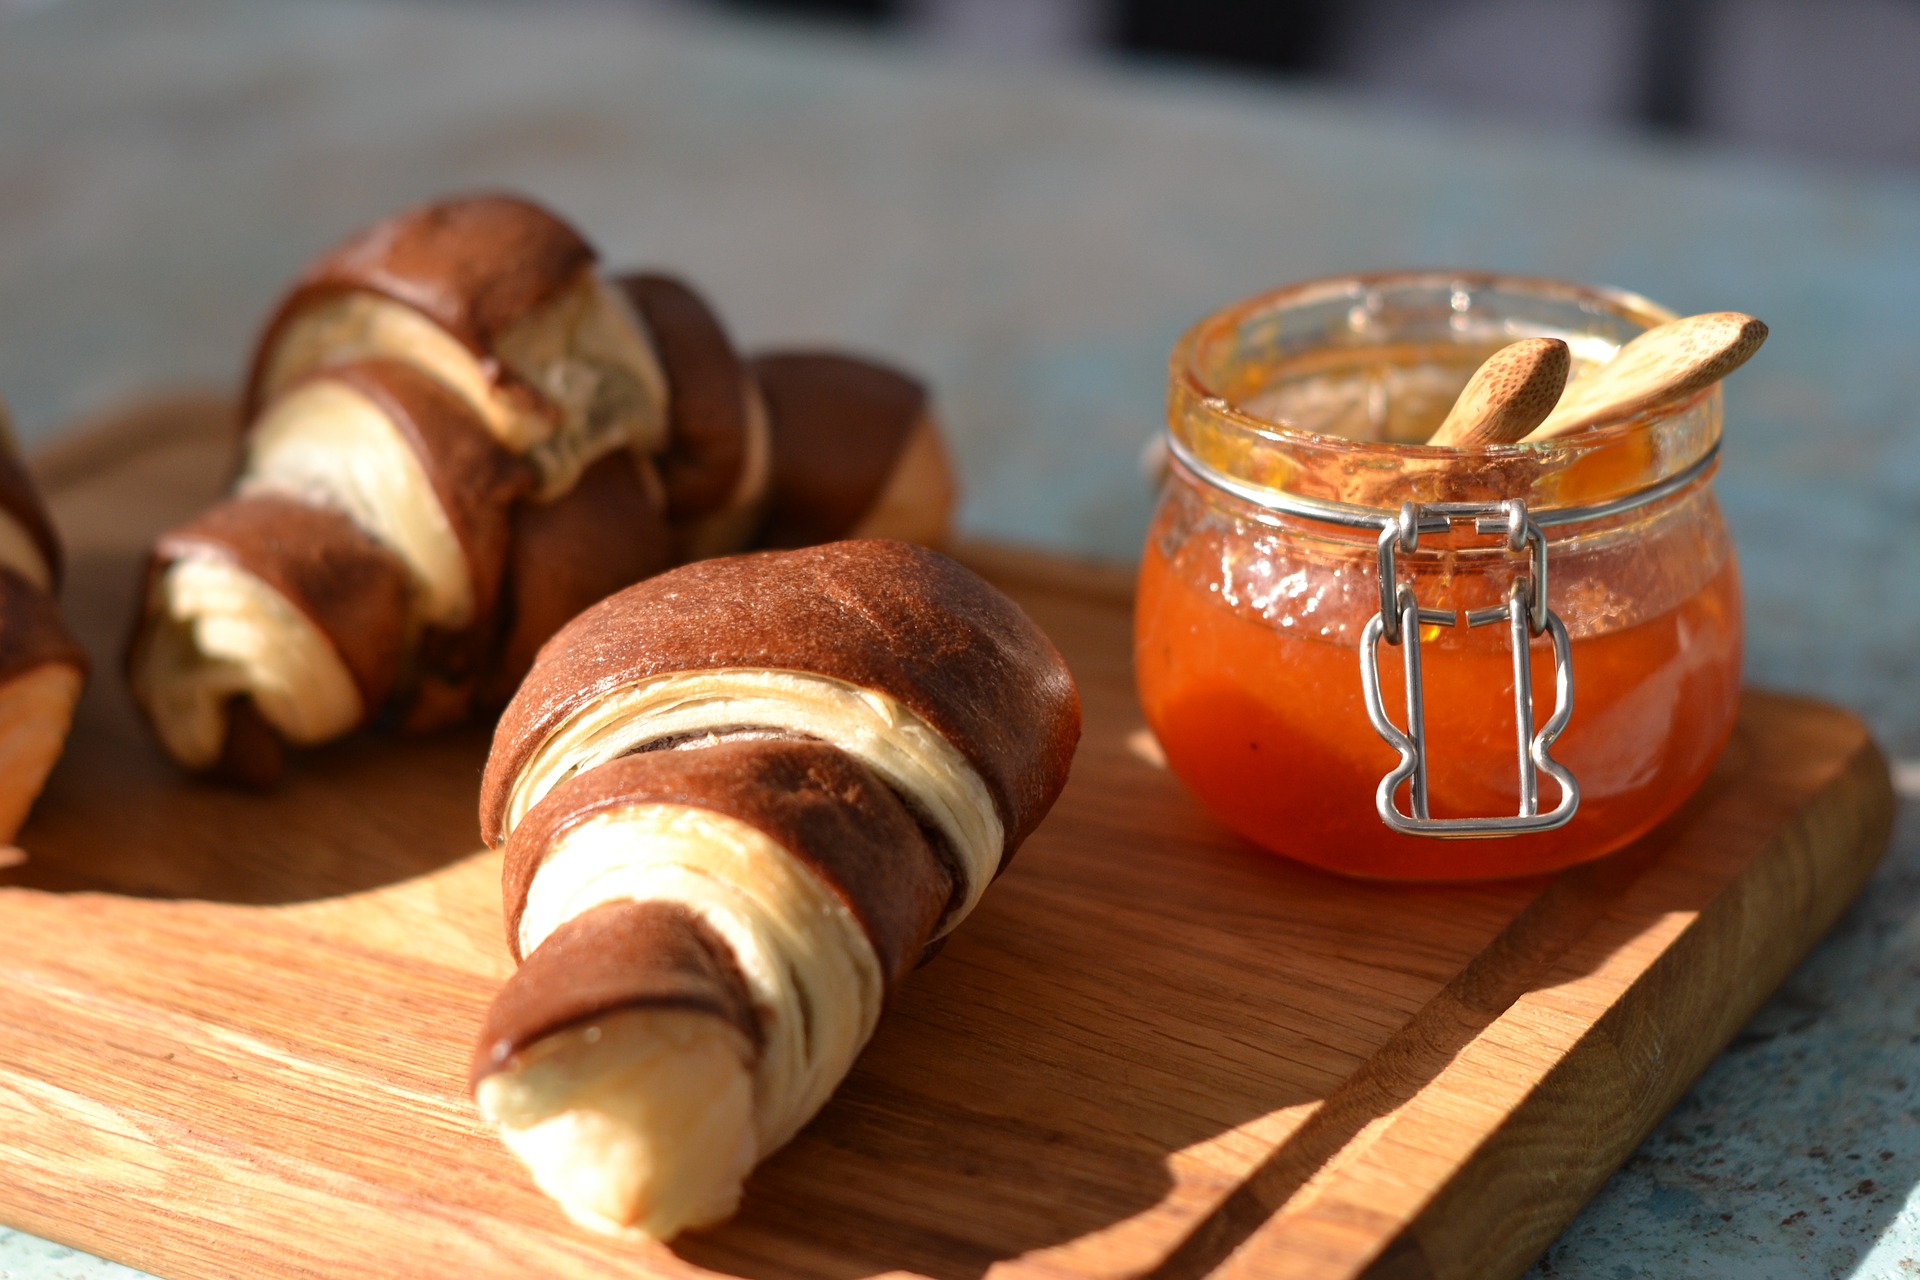 Los croissant de hojaldre son típicos de los desayunos pausados